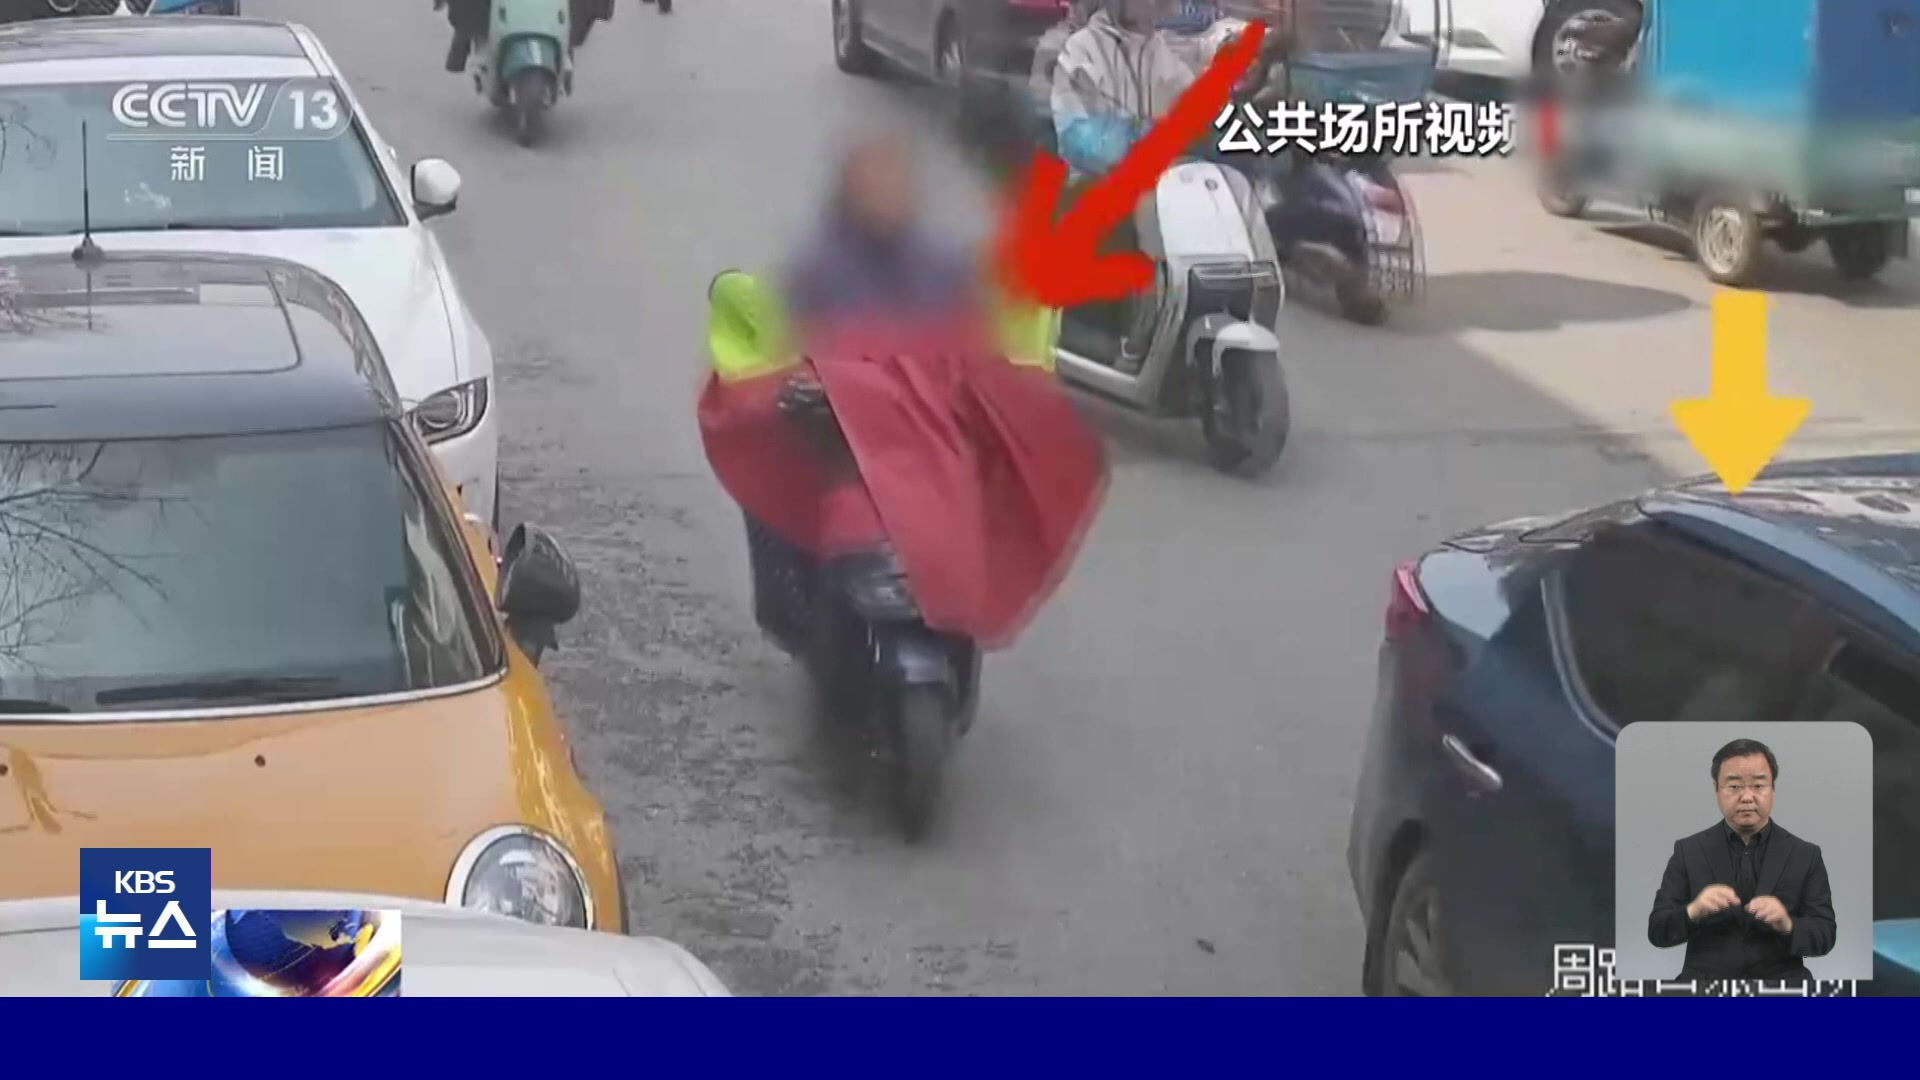 중국, 차 문 열때 오토바이와 추돌사고 잇따라